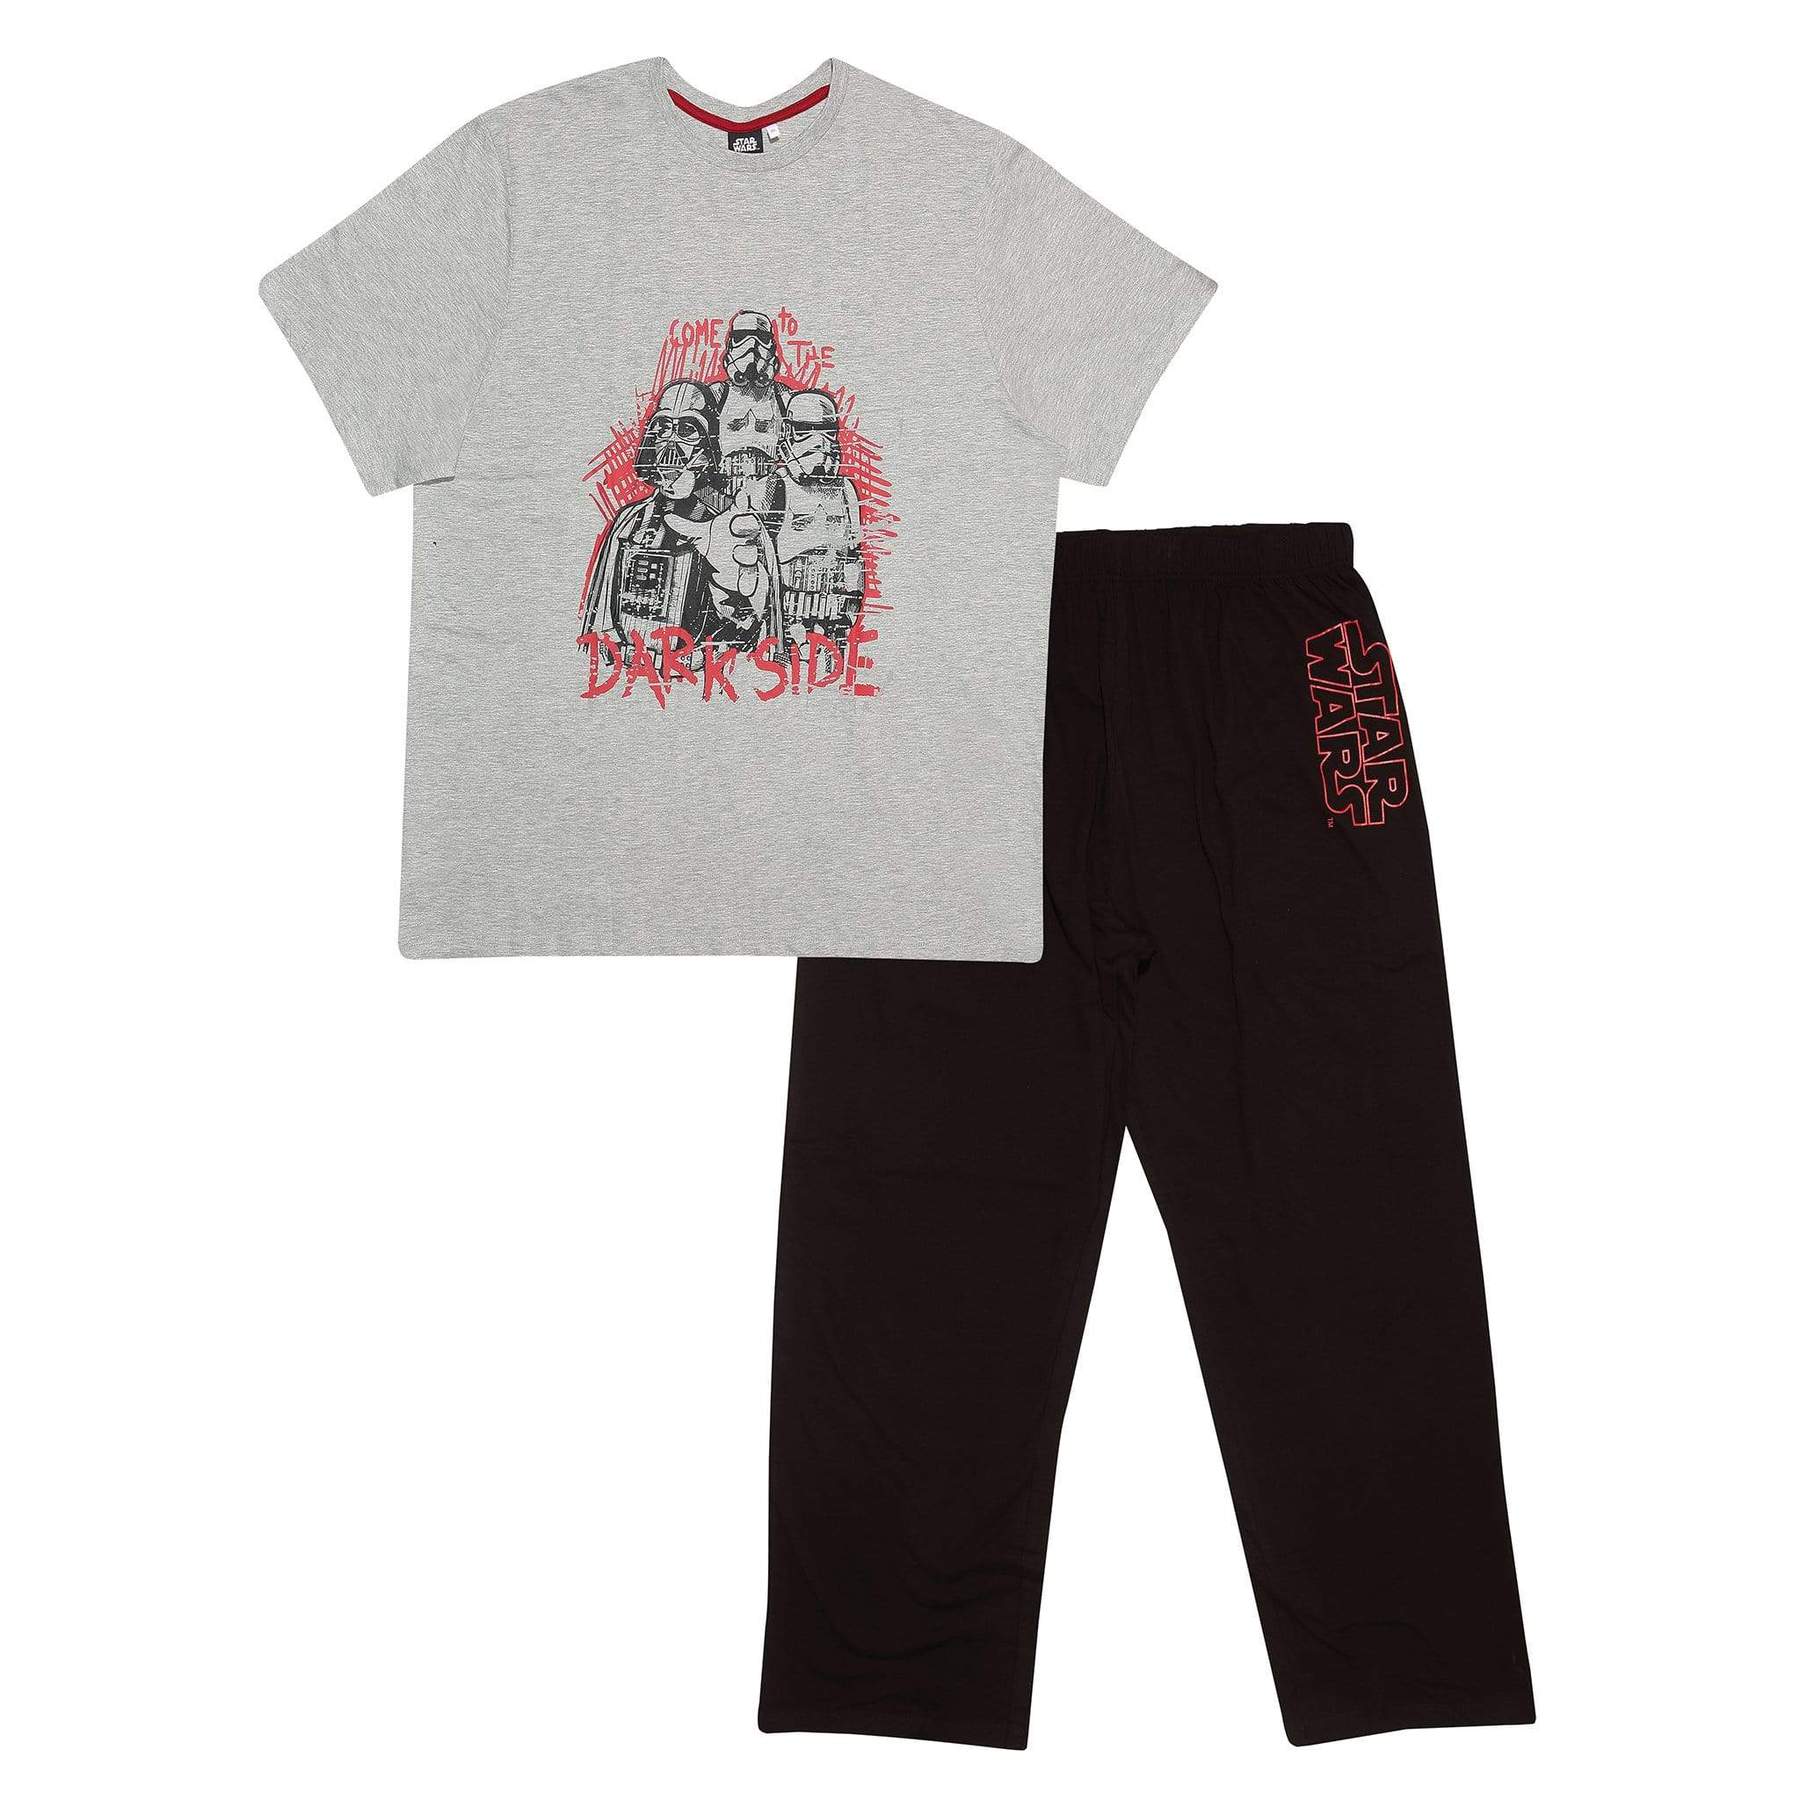 Schlafanzug Star Wars Kylo Ren Awaken Pyjama schw/rot 104-140  NEU 